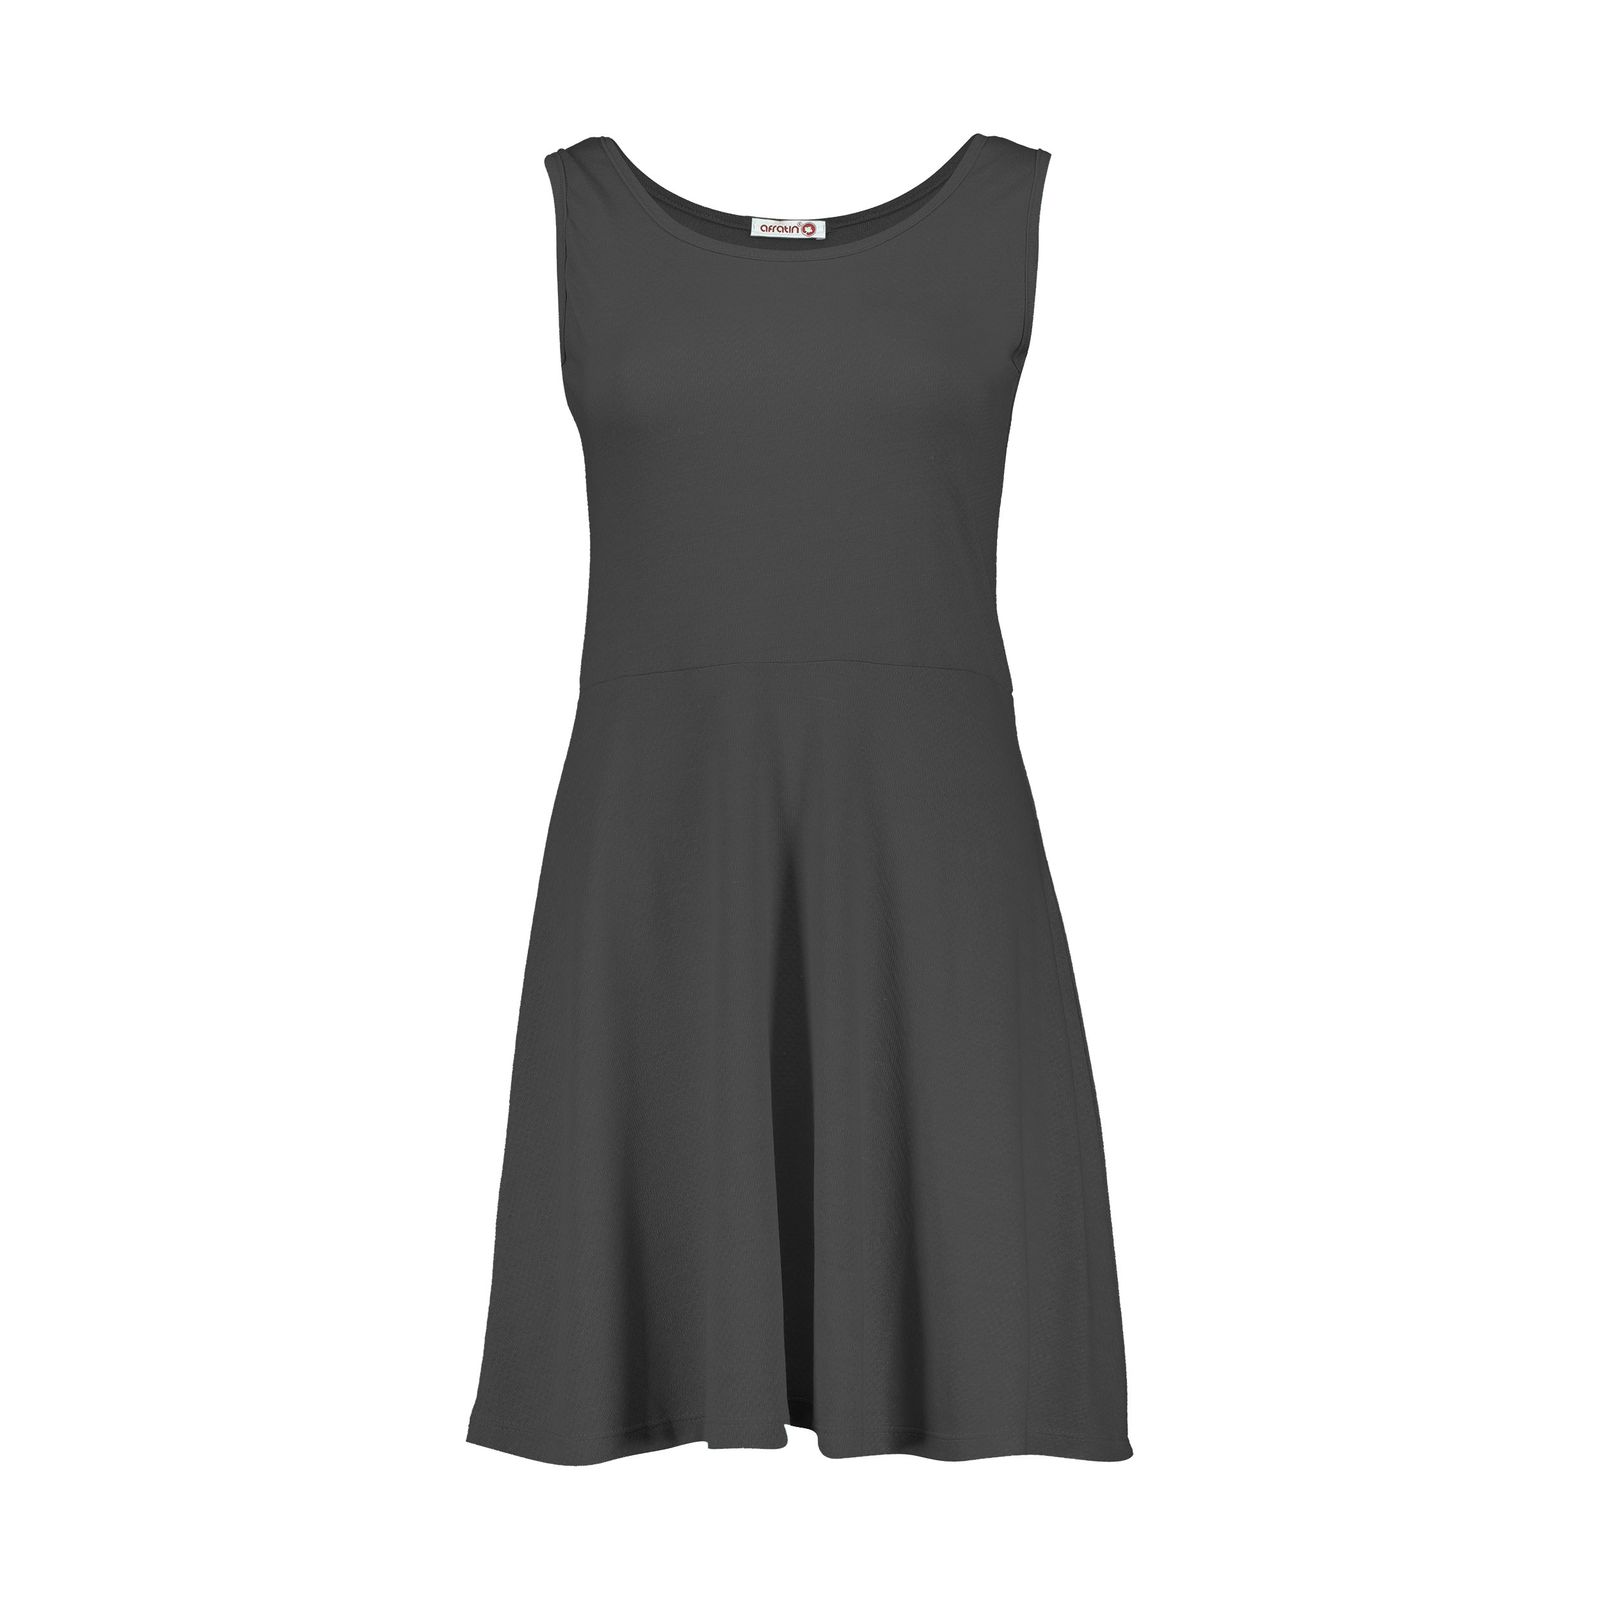 پیراهن زنانه افراتین کد 9641-3 رنگ خاکستری -  - 1